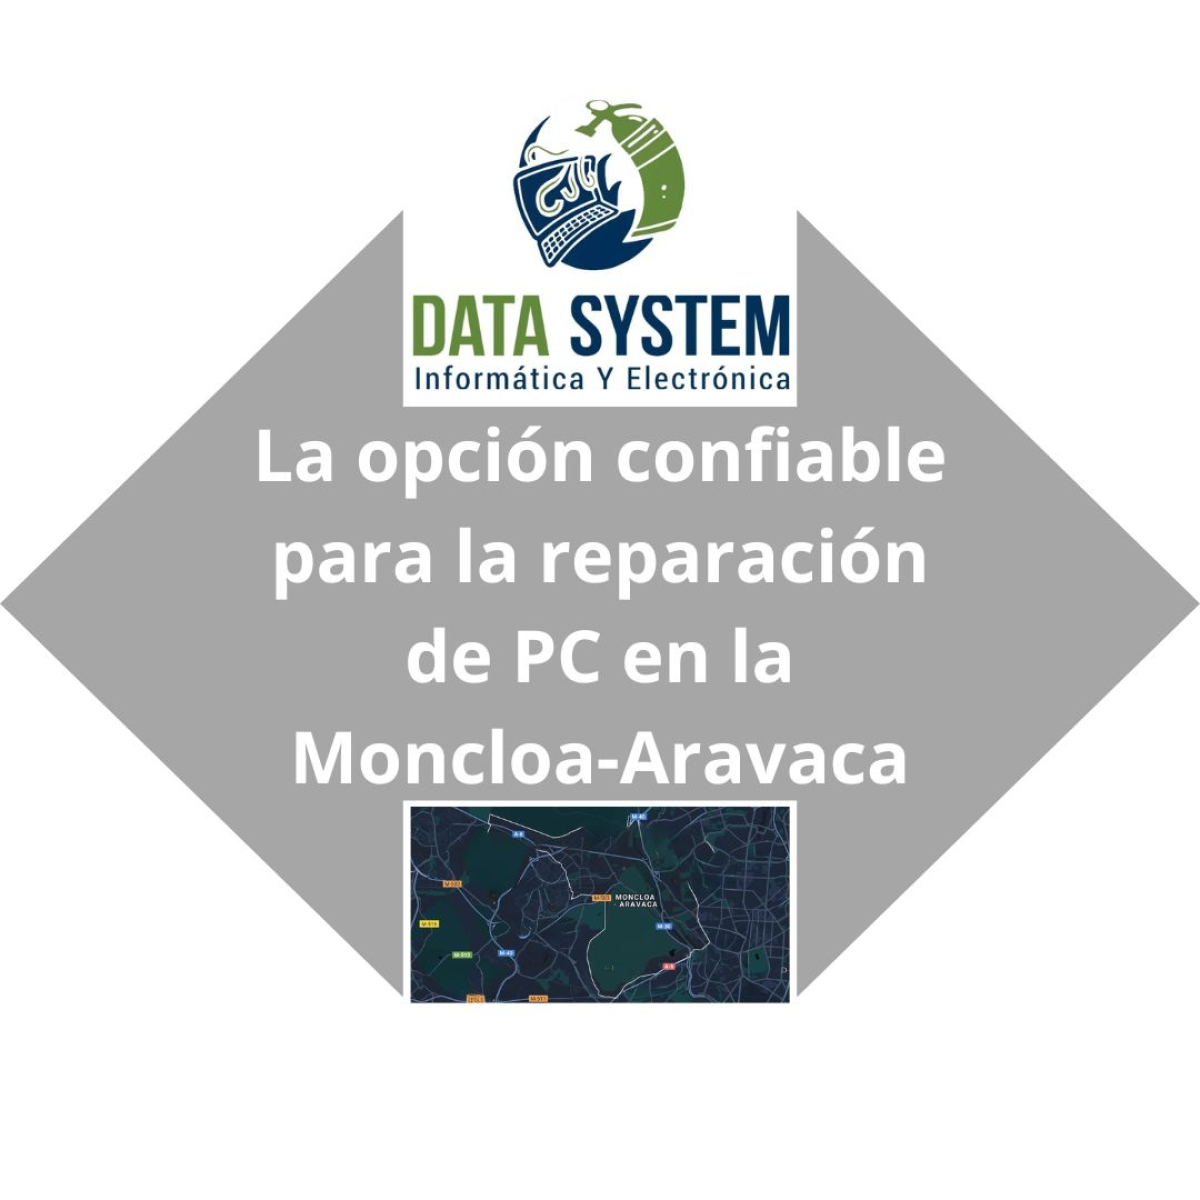 DATA SYSTEM - La opción confiable para la reparación de PC en  La Moncloa-Aravaca